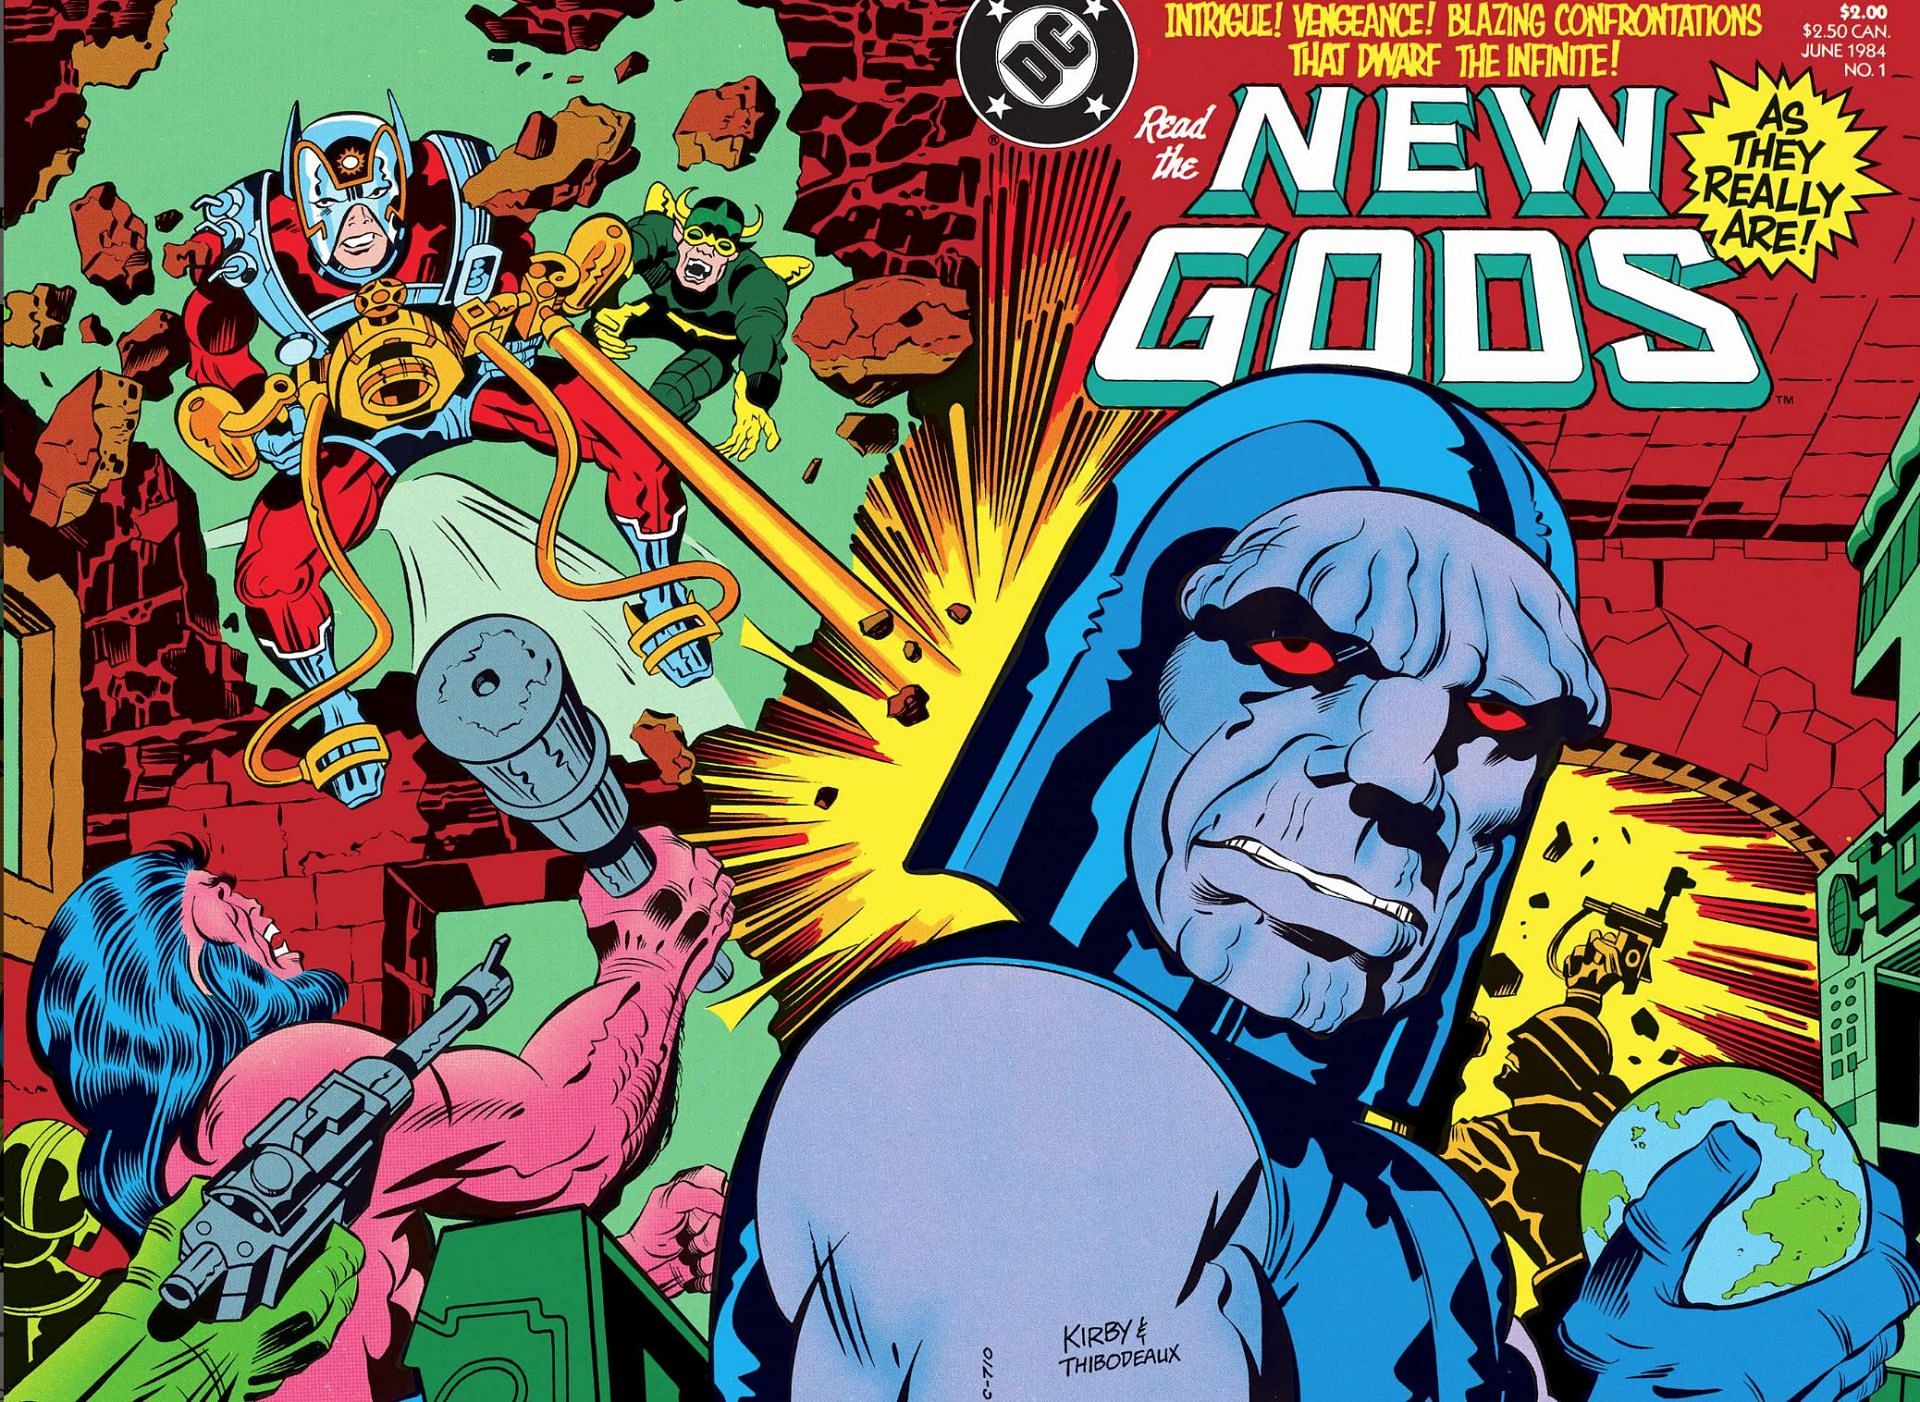 The New Gods (Image via DC)